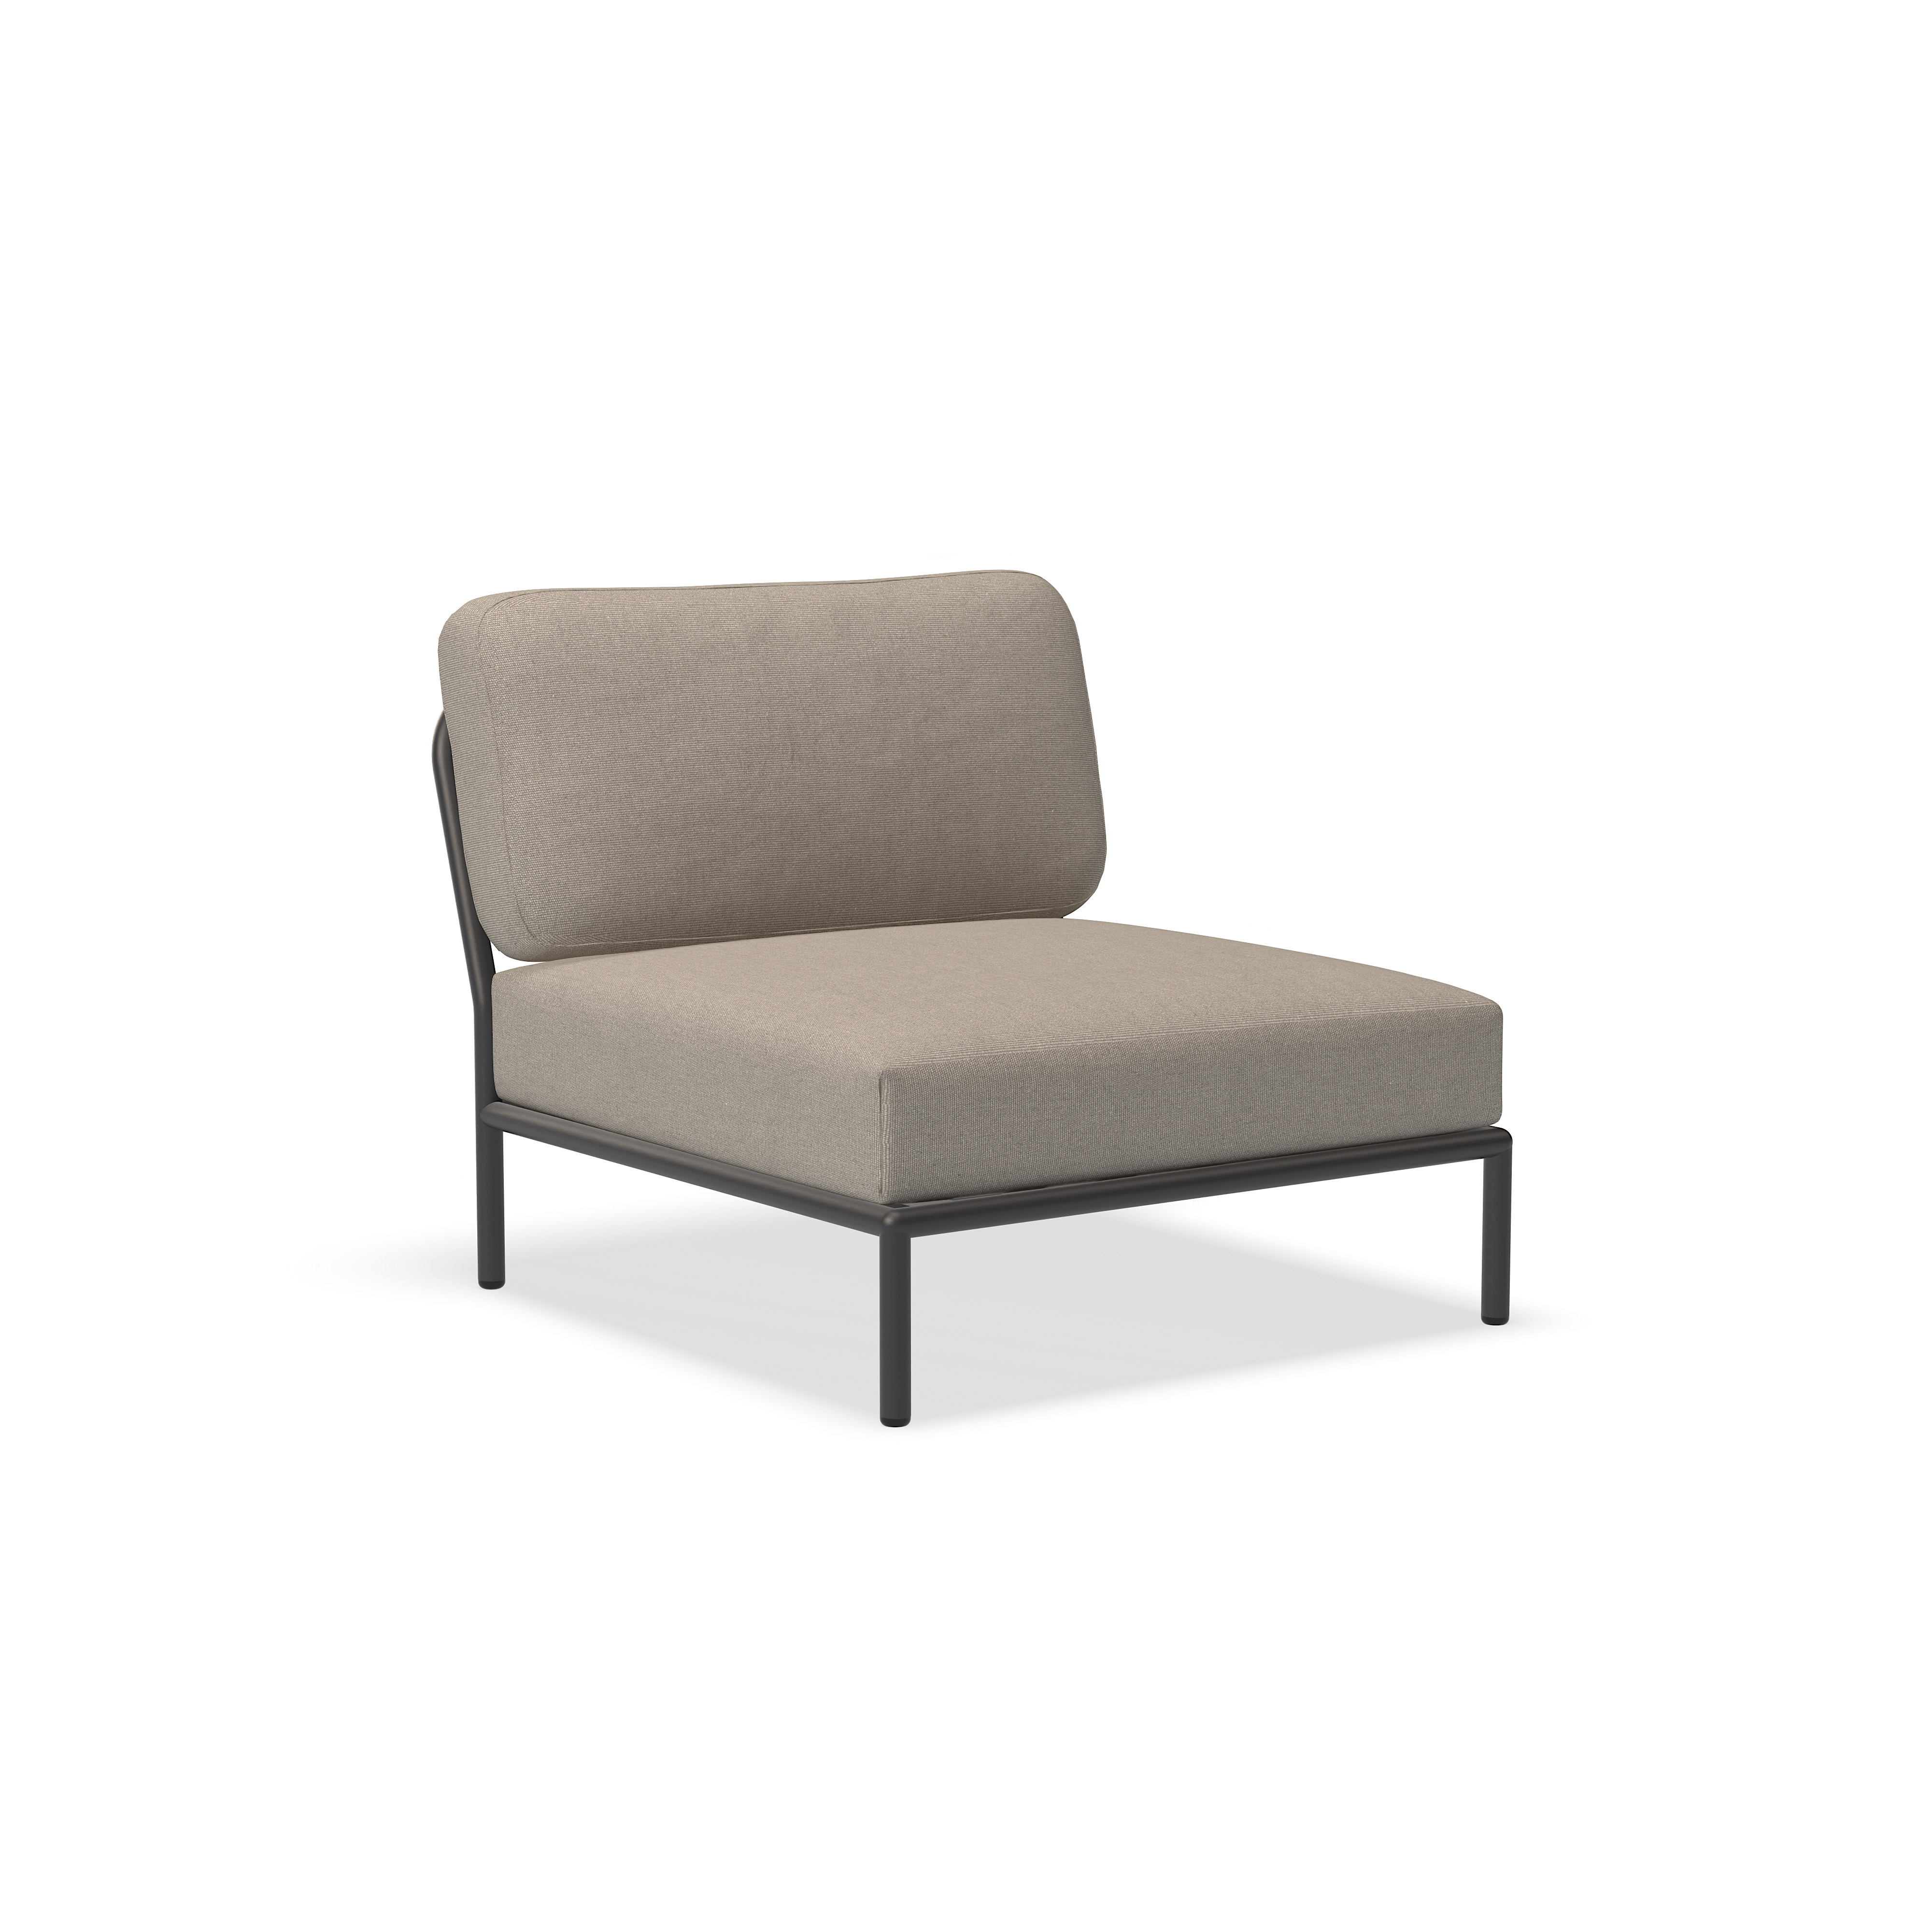 Cadeira - 12205-9251 - Cadeira, Ash (HERITAGE), estrutura cinza escuro